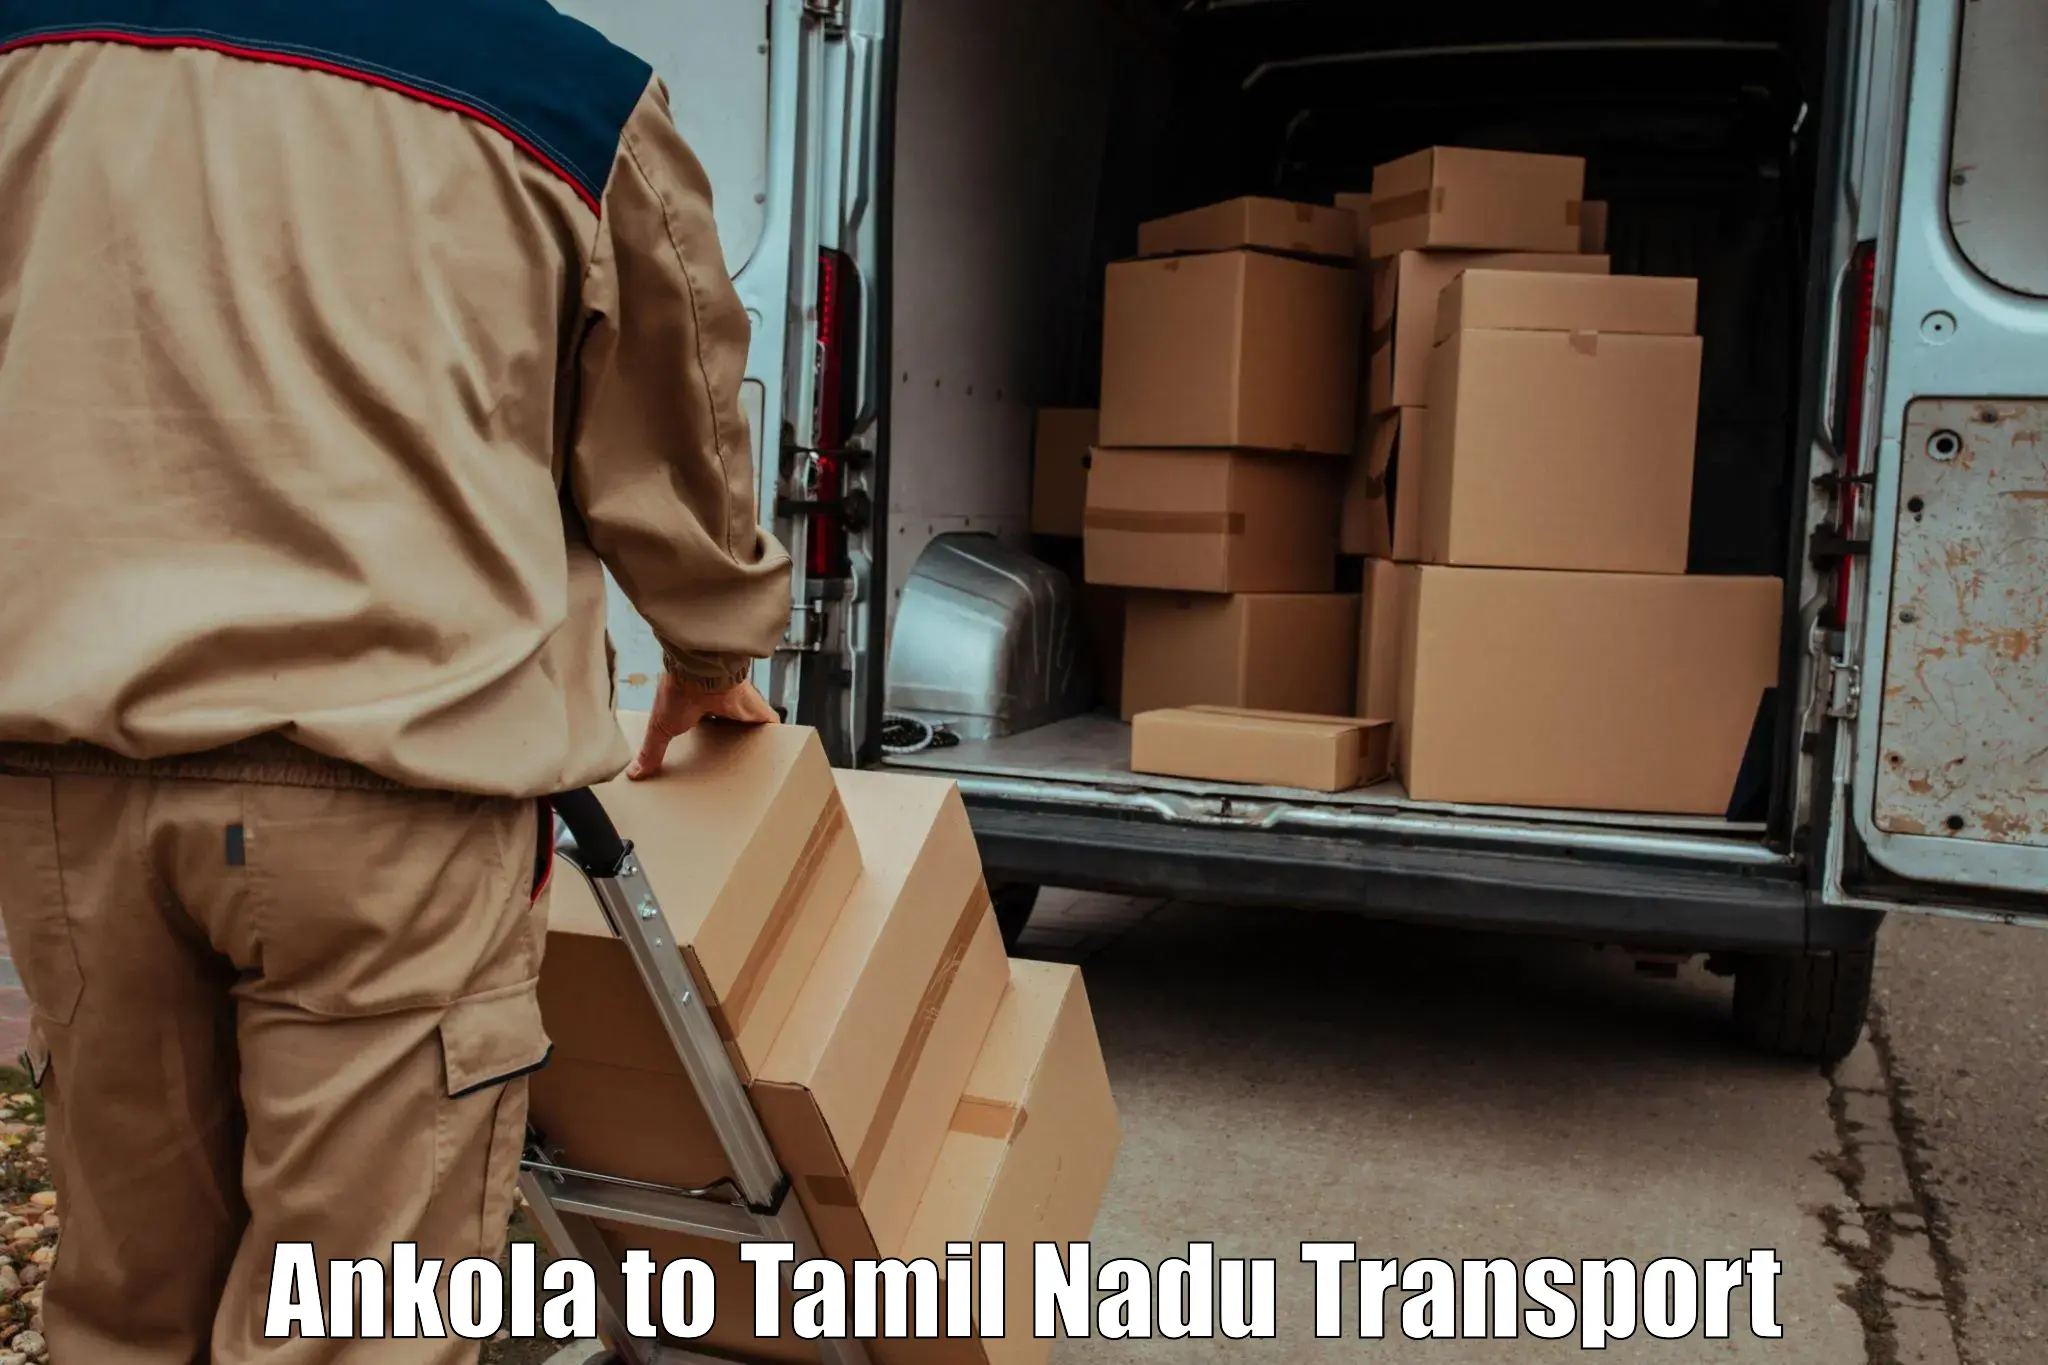 Shipping services Ankola to Kodaikanal